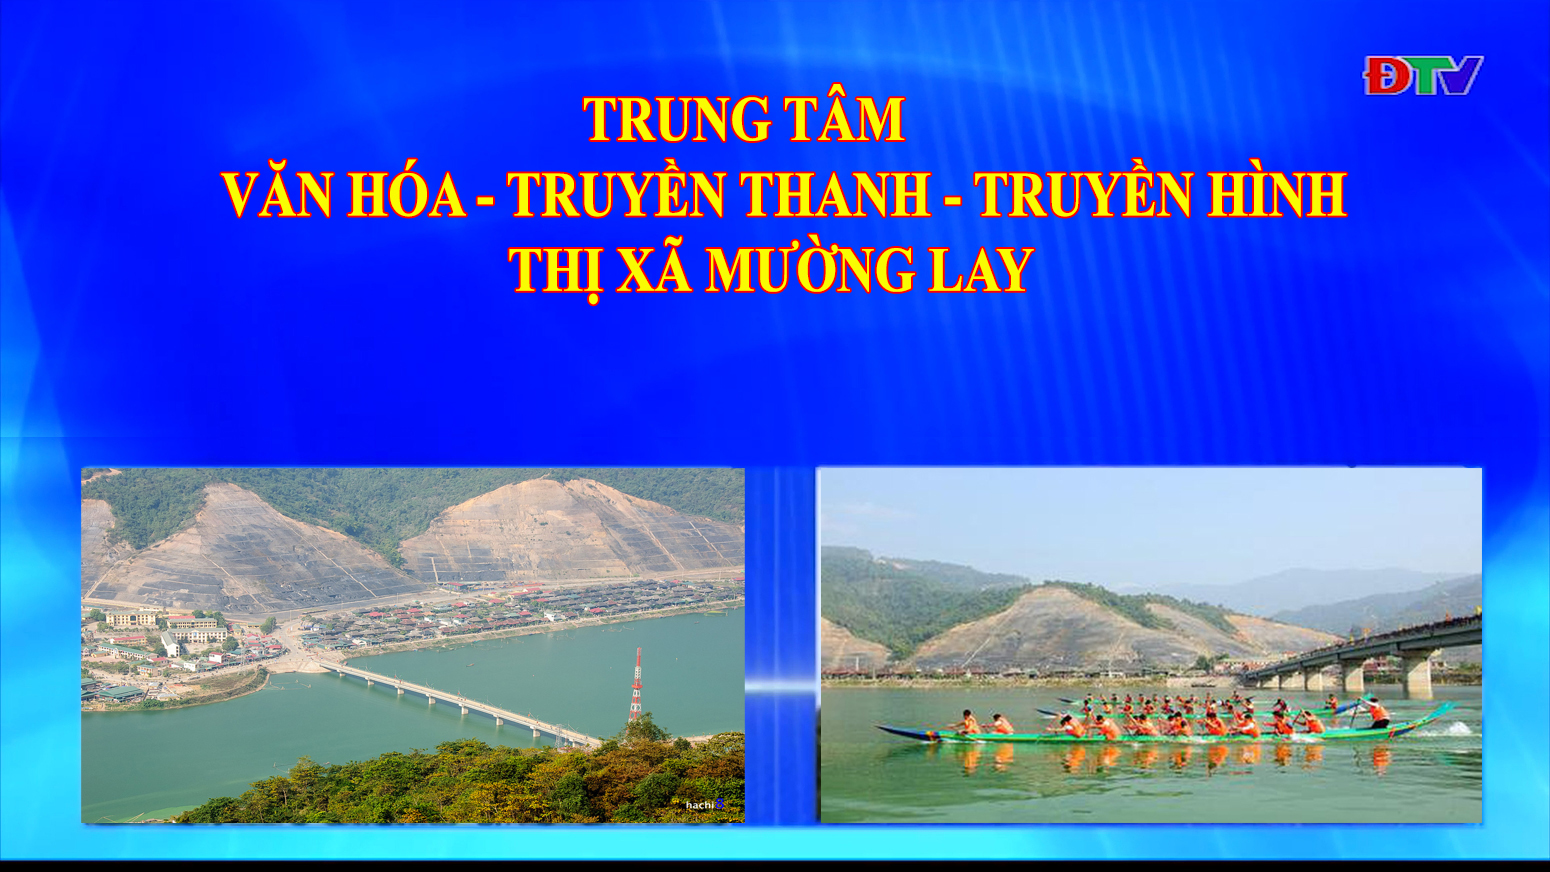 Trung tâm VH-TTTH thị xã Mường Lay (Ngày 2-7-2021)